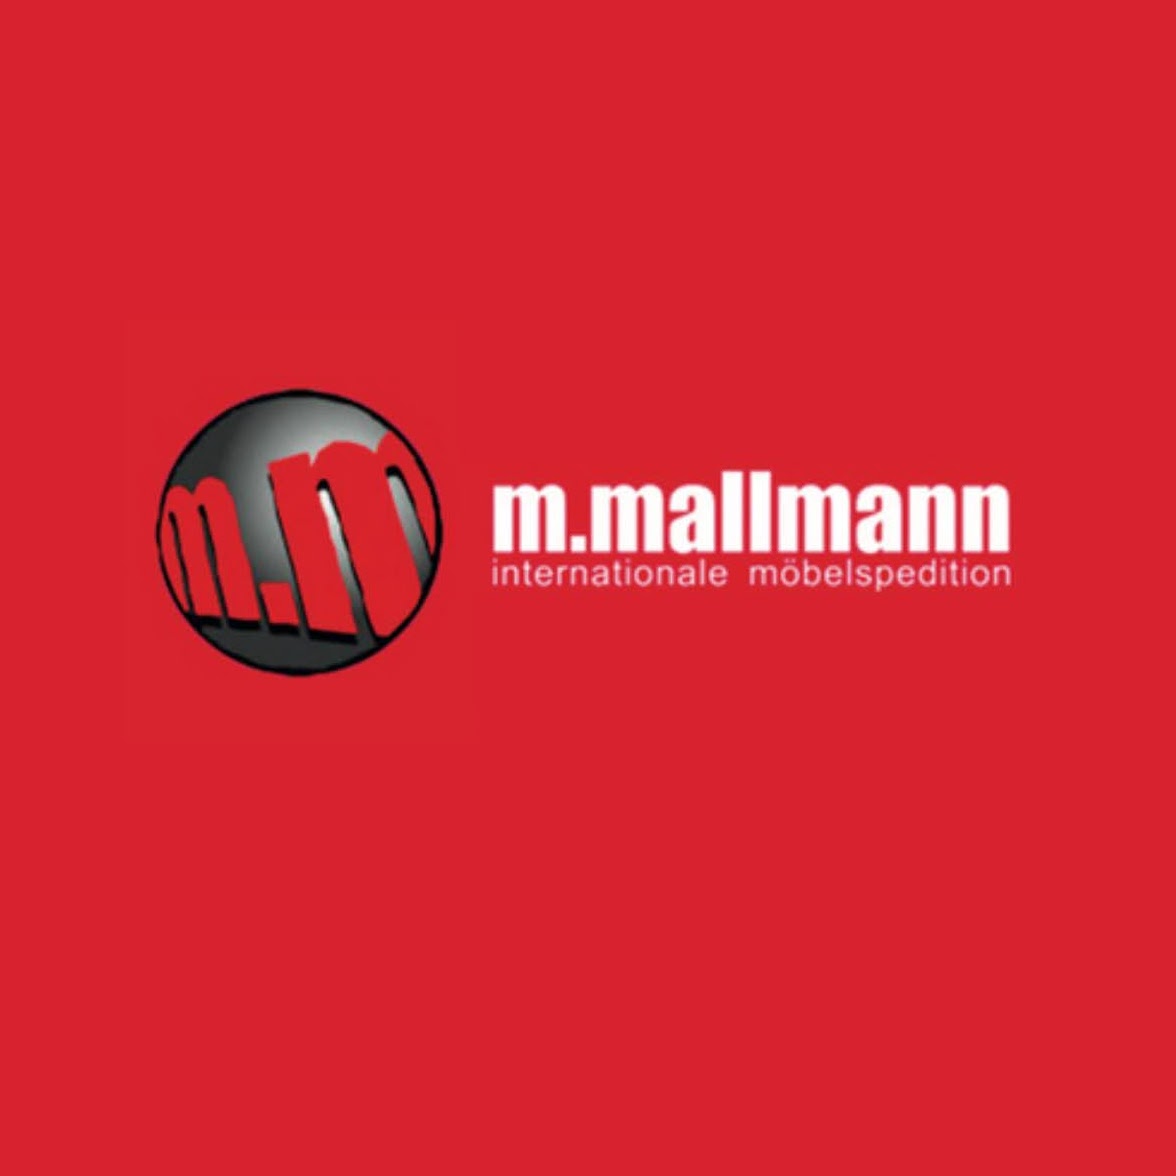 M. Mallmann Internationale Möbelspedition